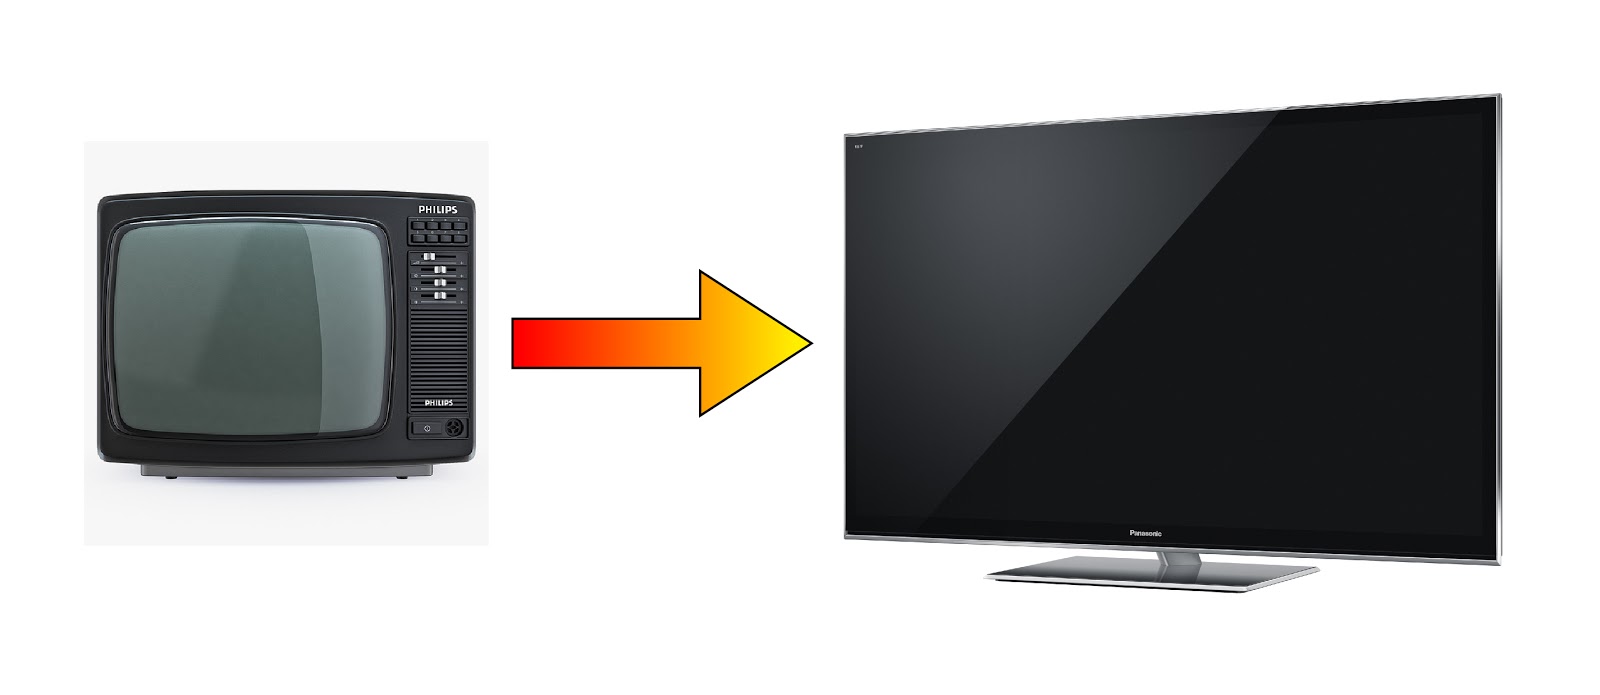 Телевизор стали. Современный и старый телевизор. Телевизоры разных поколений. Старый телевизор. Старый телевизор и новый телевизор.